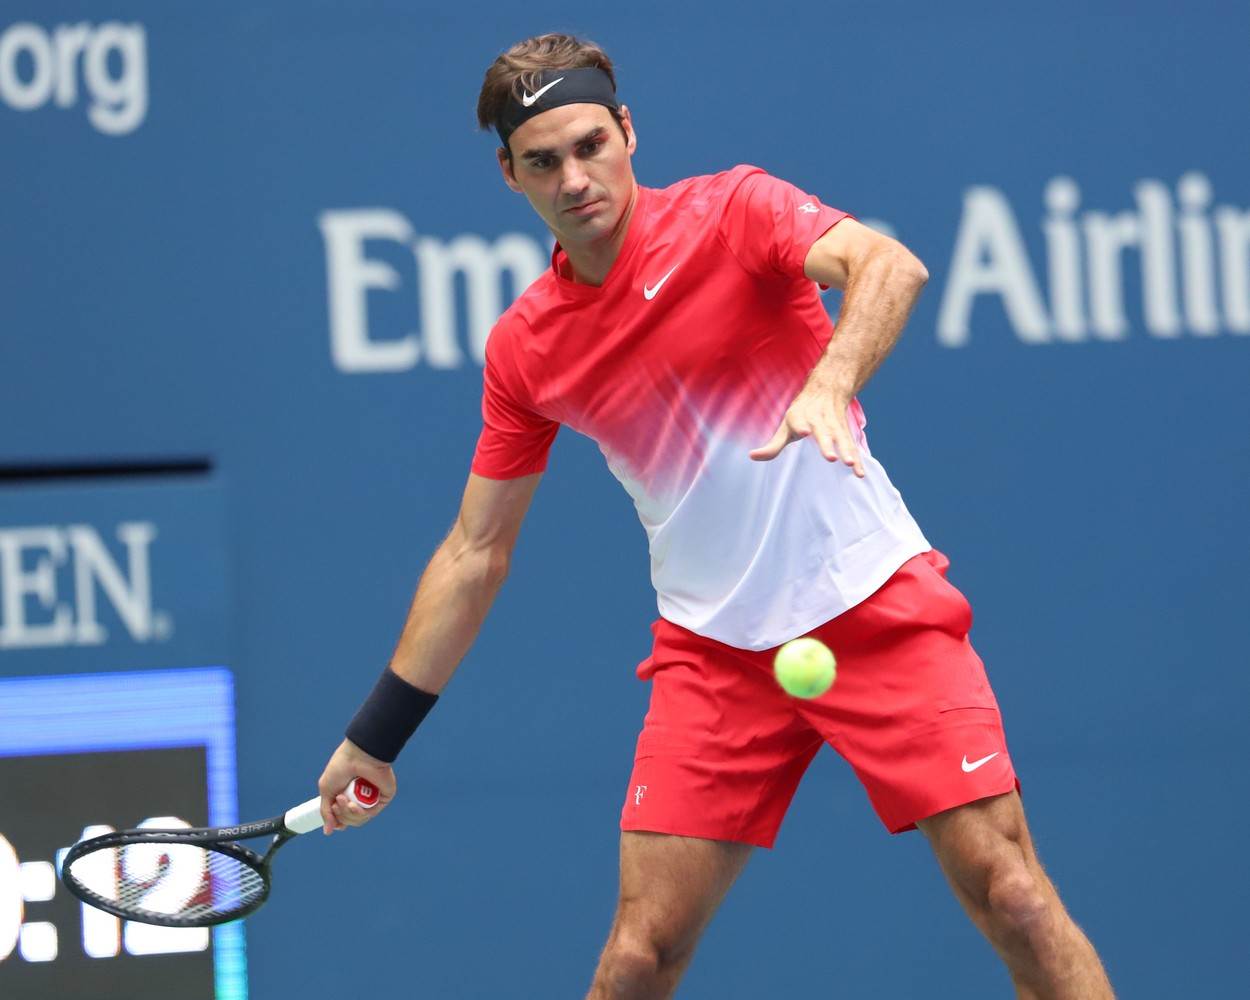  Rodžer Federer je priznao da je nakon poraza mnogo patio. 